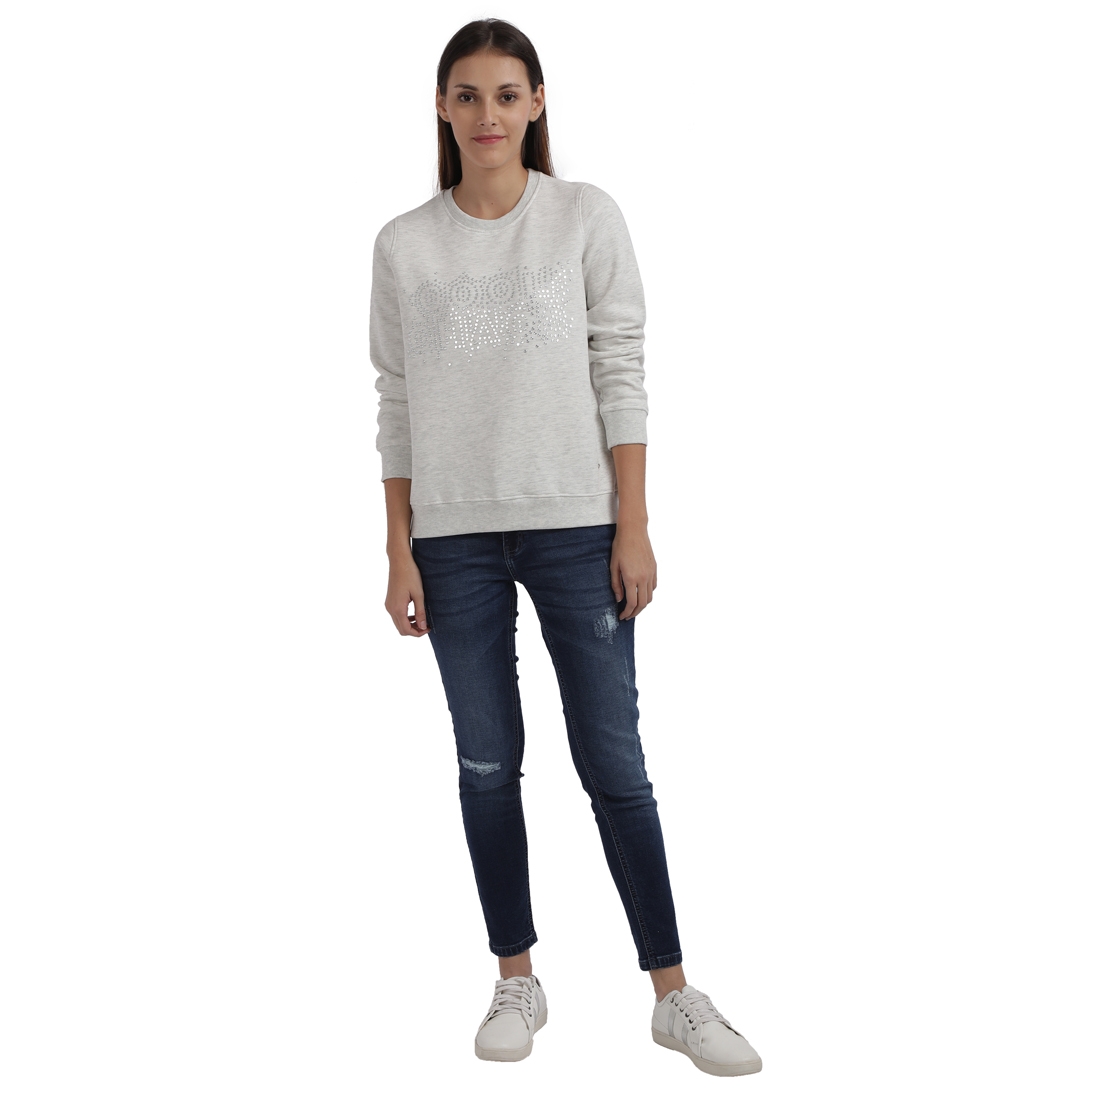 Parx Woman | Parx Woman White Sweatshirt 4